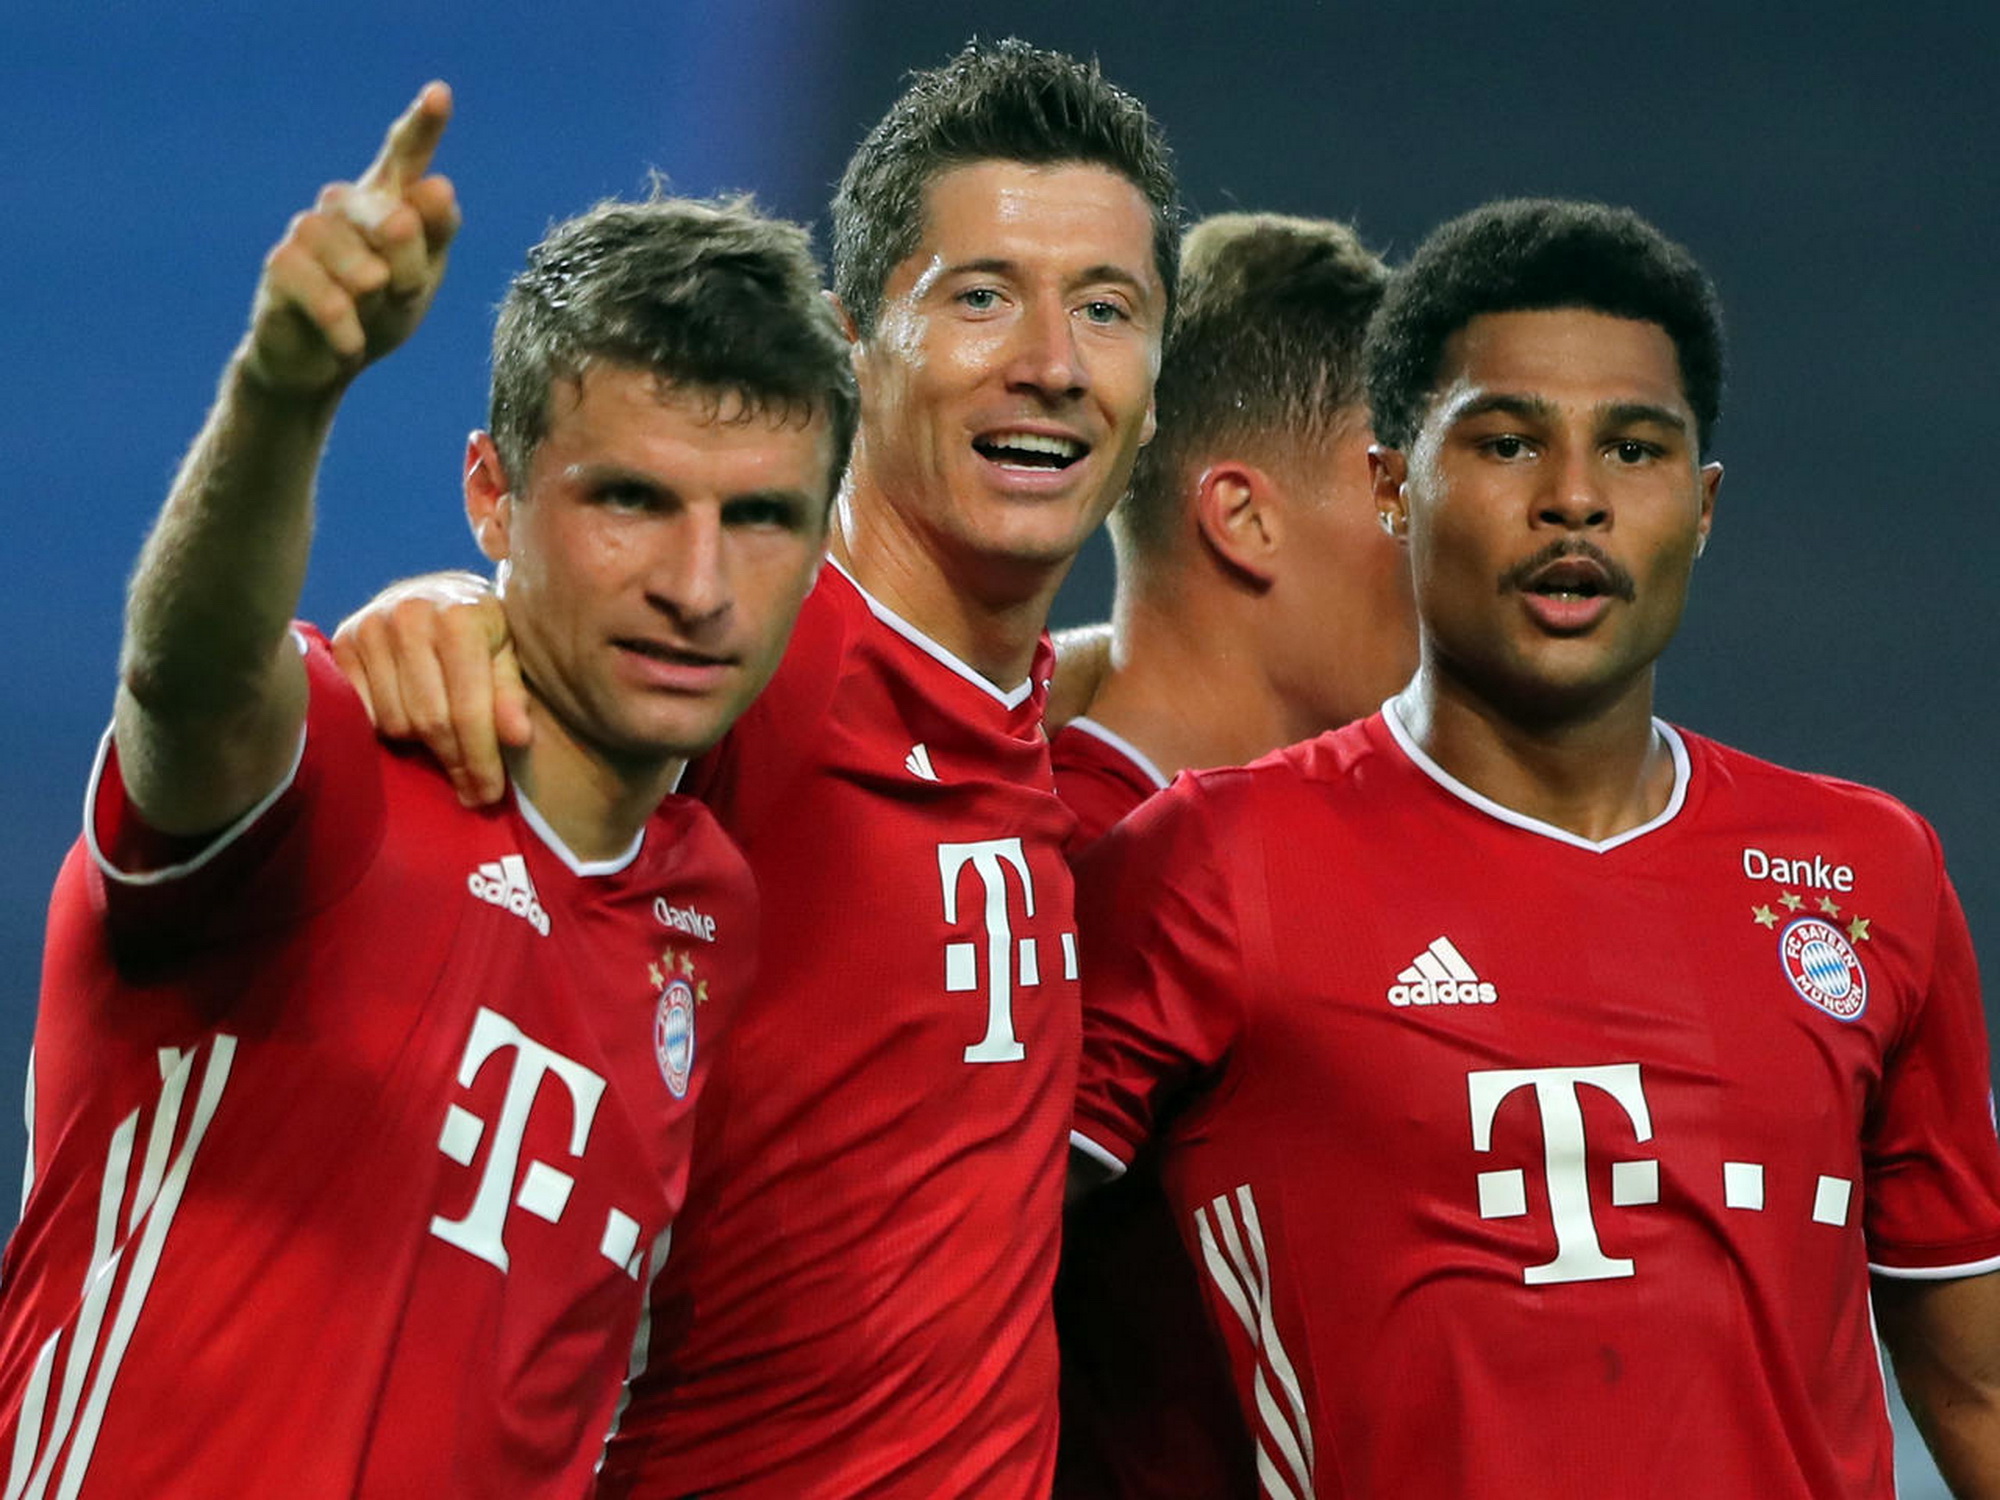 Sau mùa giải vô cùng thành công, Bayern giờ đây lại chuẩn bị bước vào guồng quay mới và chưa bao giờ hết khát khao chinh phục những danh hiệu. (Nguồn: Getty Images)